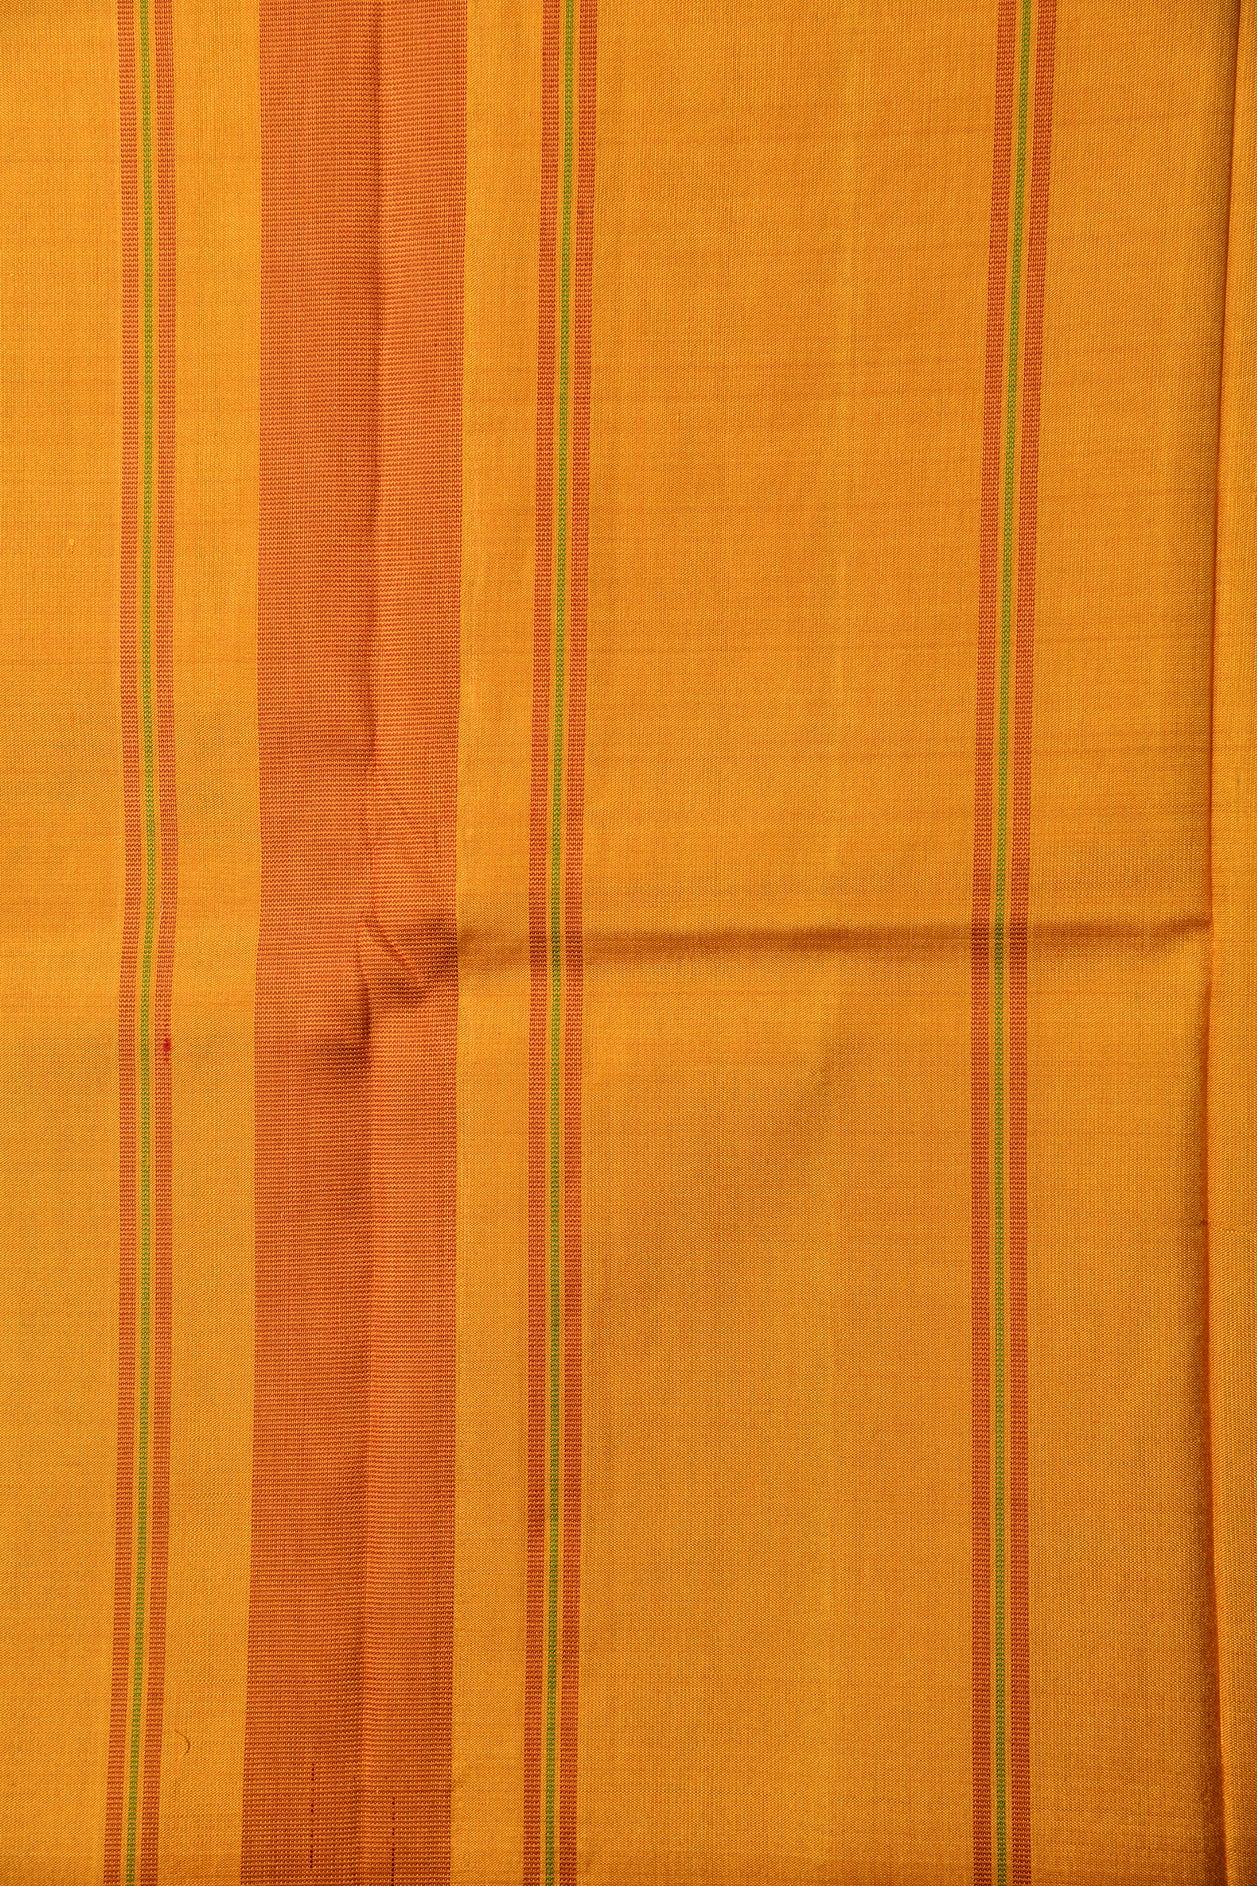 Thread Work Dark Maroon Kanchipuram Silk Saree